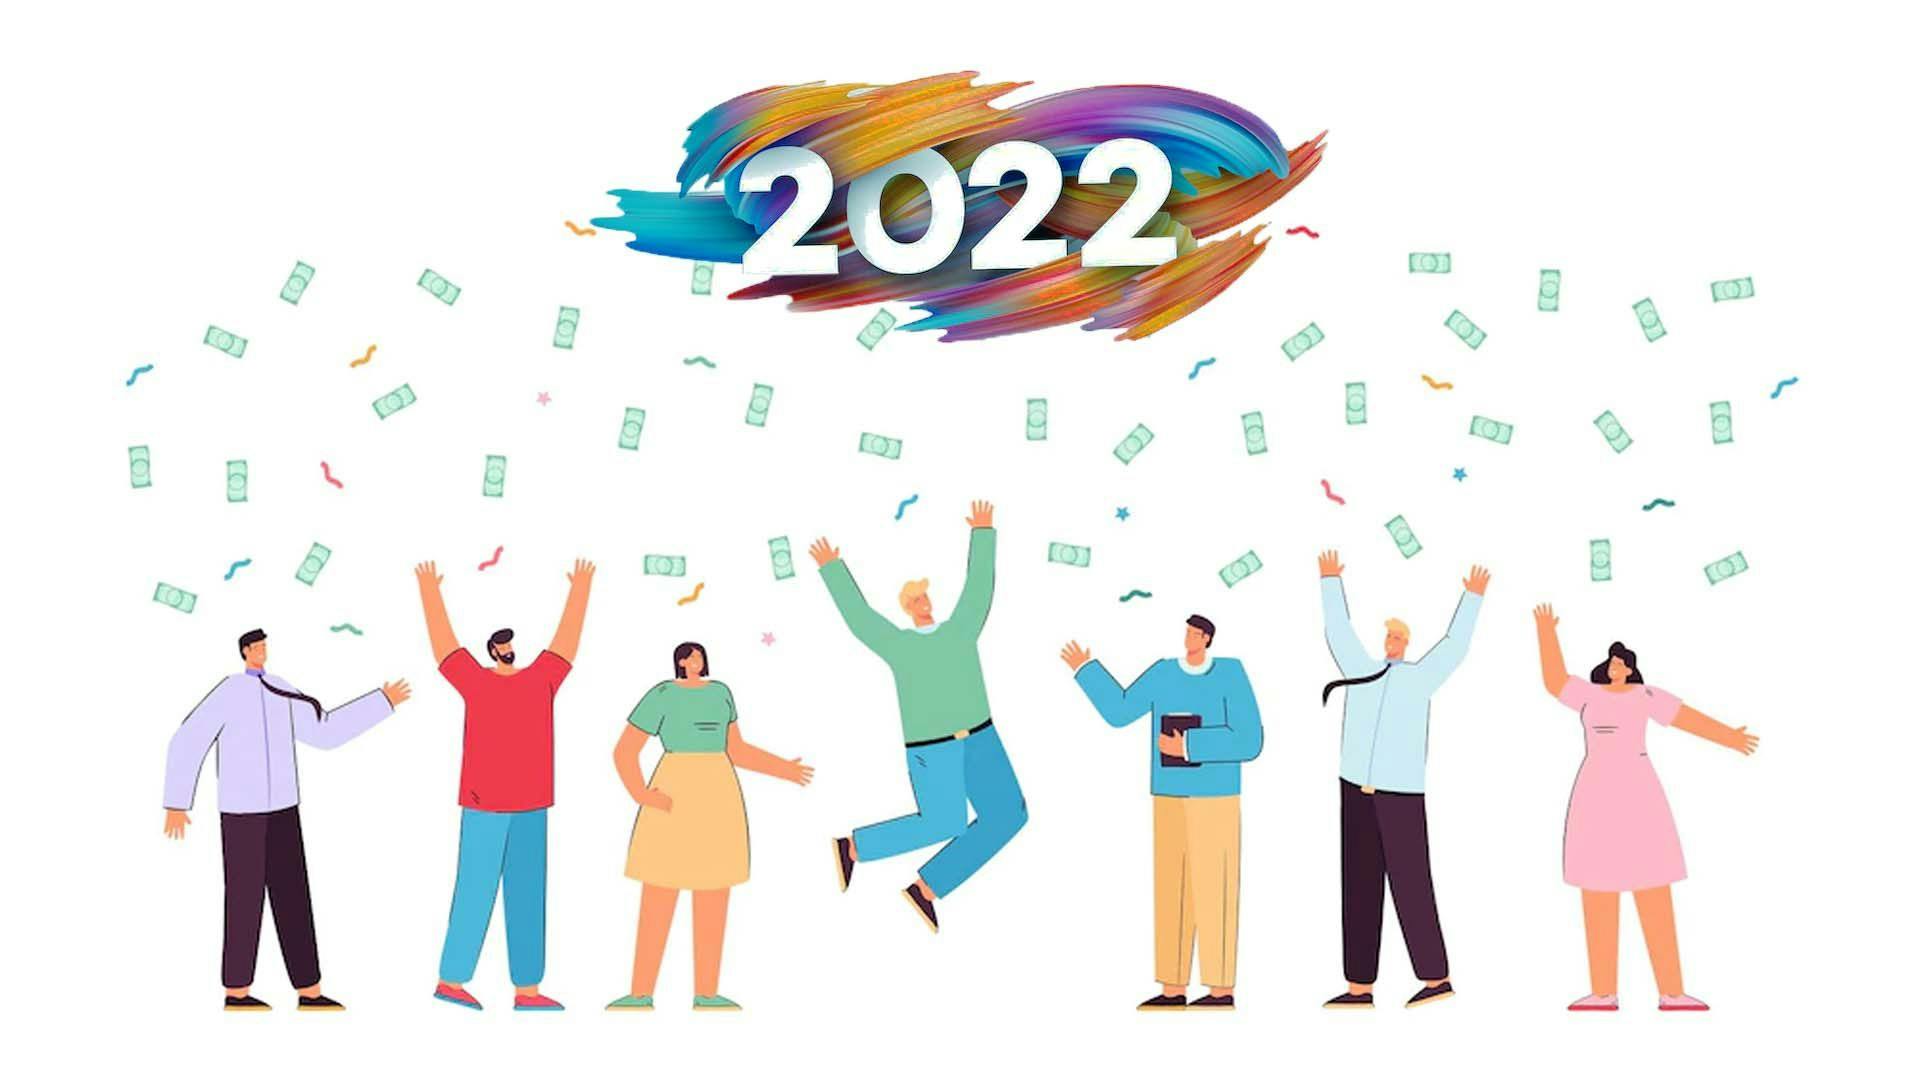 investire-2022-migliori-opportunita.jpg